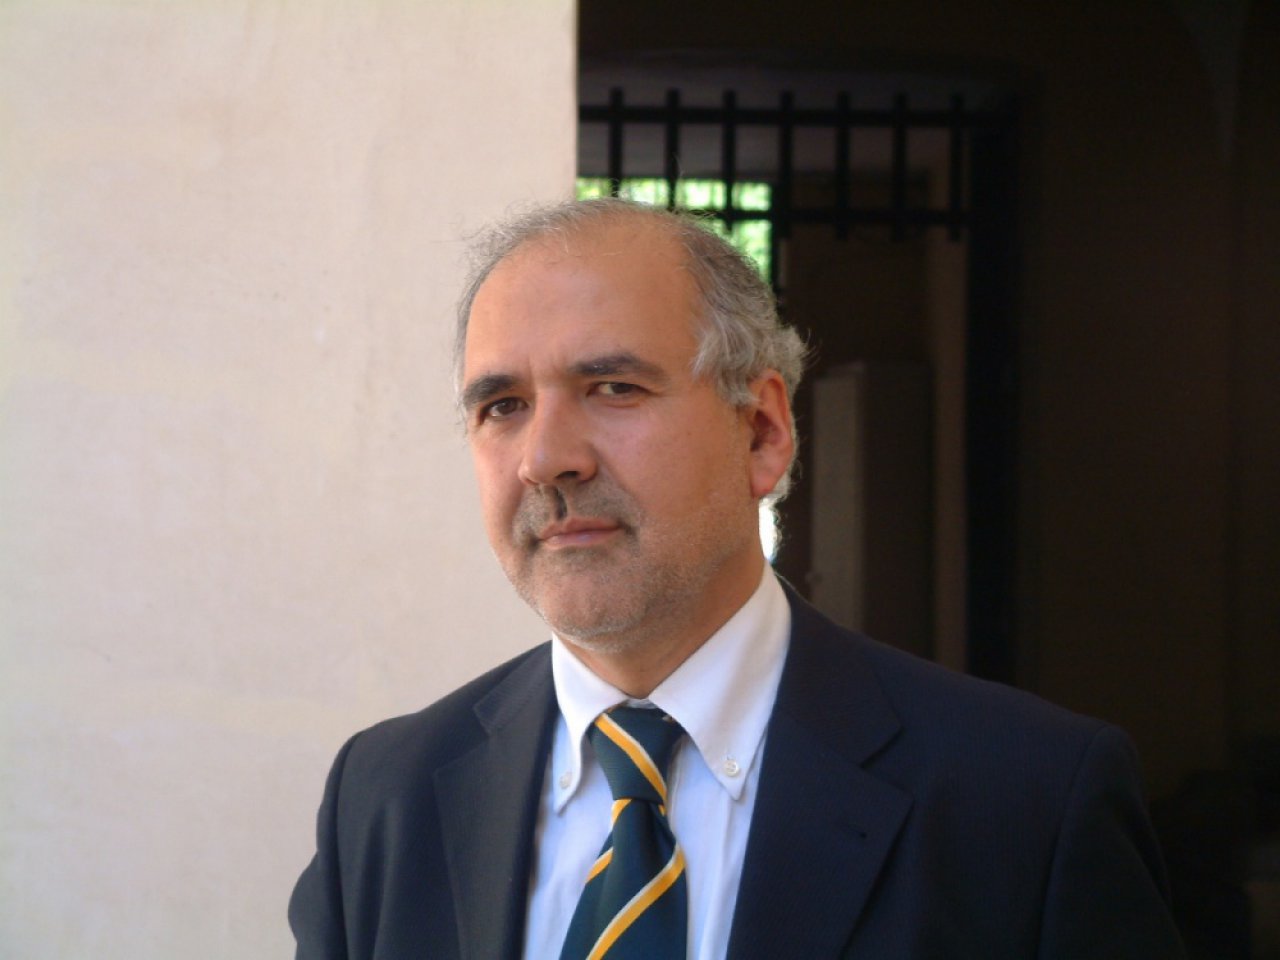 Vito Salvatore Manfredi